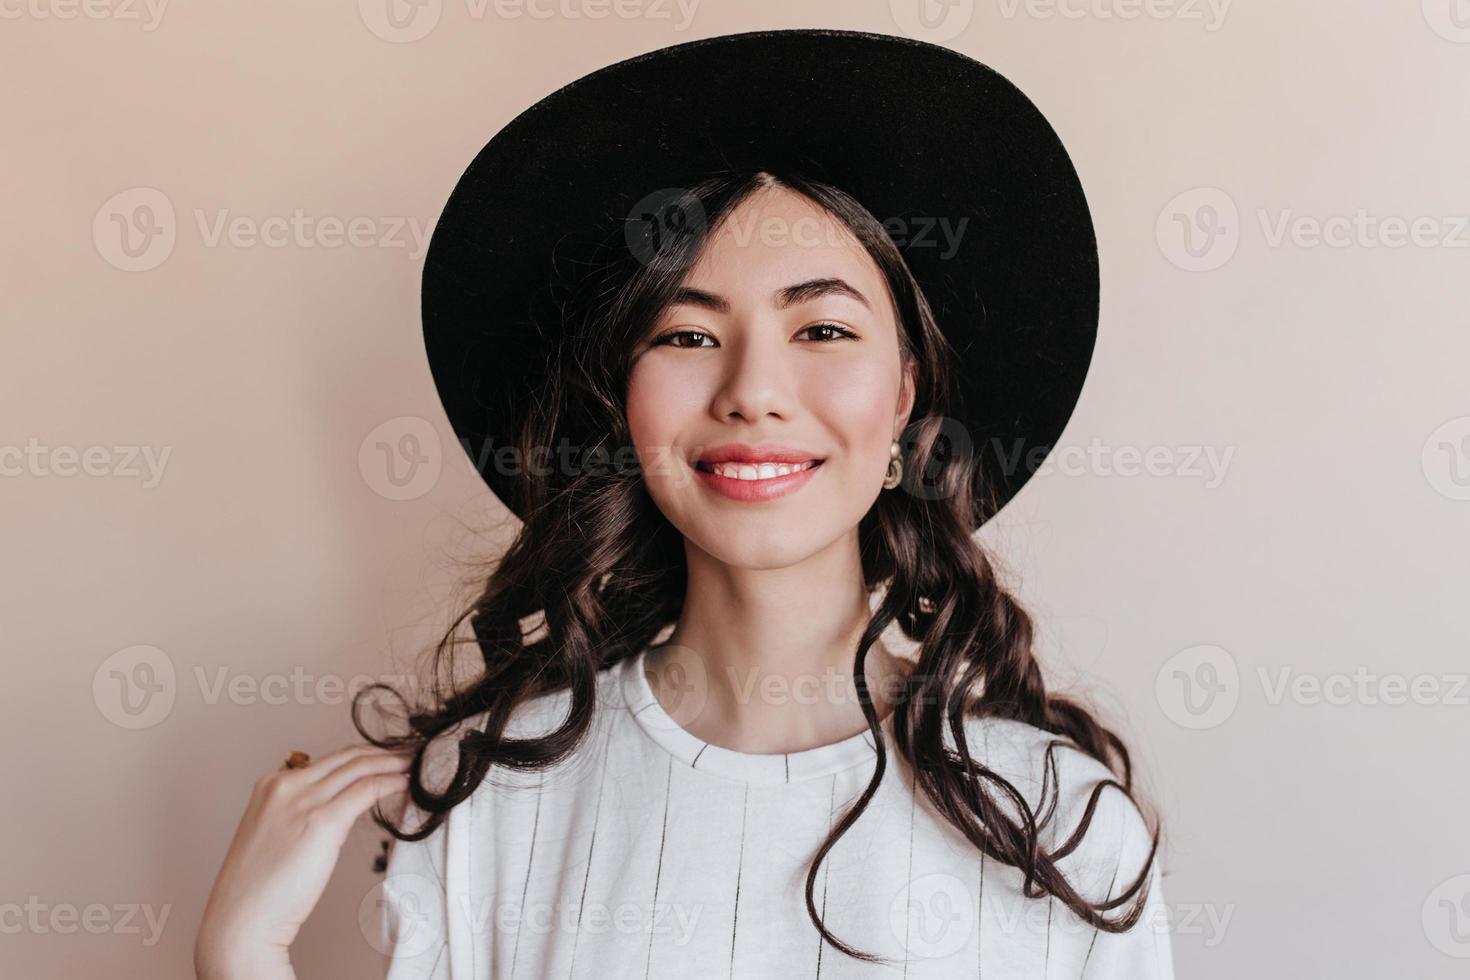 vista frontal de una alegre mujer asiática sonriente. foto de estudio de una chica coreana feliz con sombrero negro.